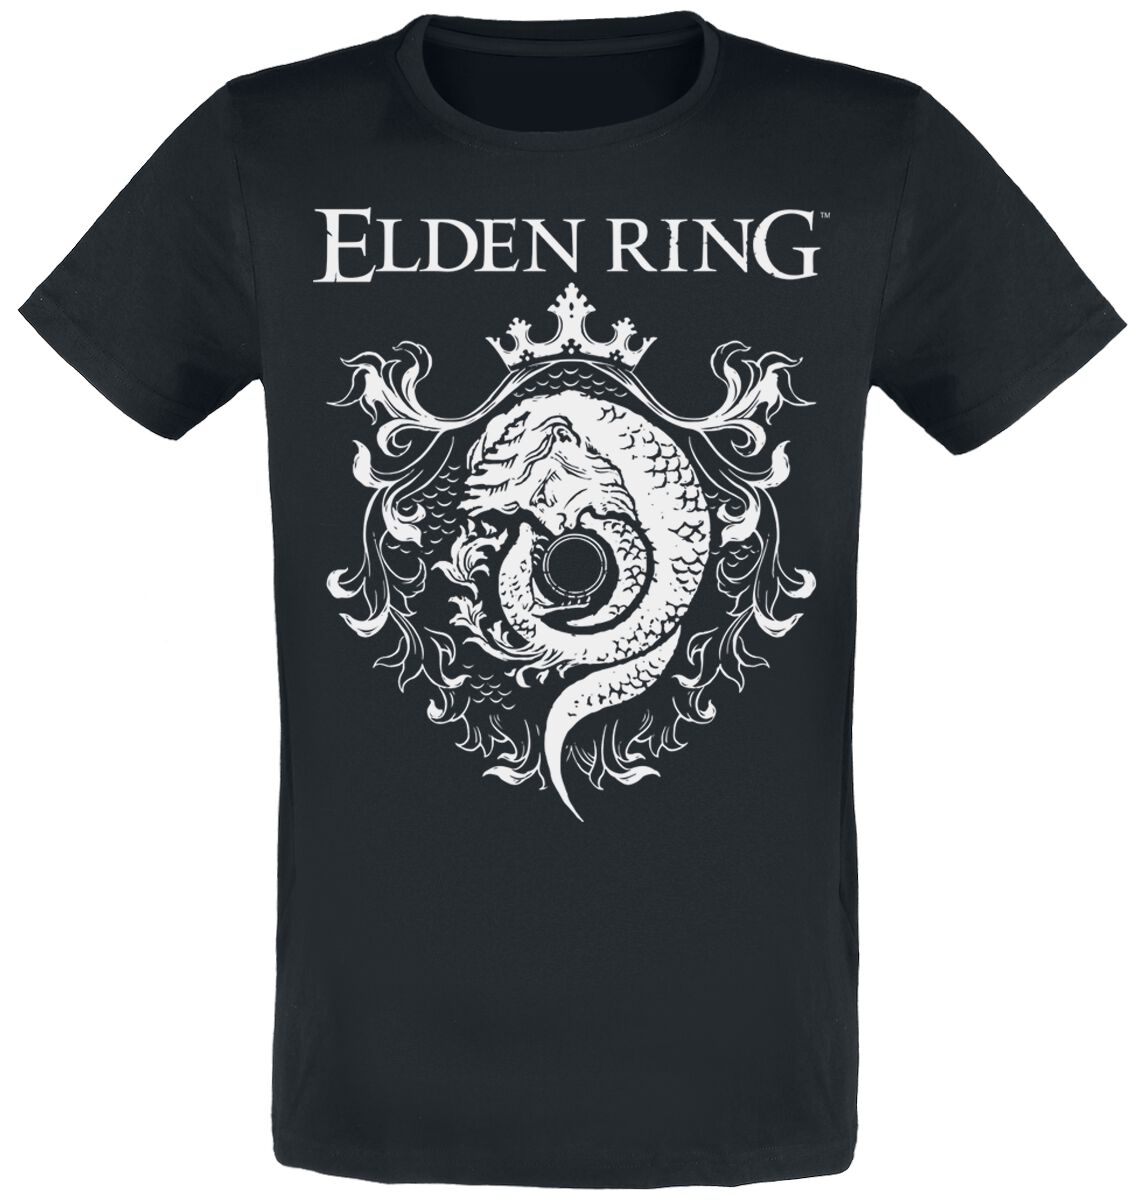 Elden Ring - Gaming T-Shirt - Crest - S bis XXL - für Männer - Größe L - schwarz  - EMP exklusives Merchandise!